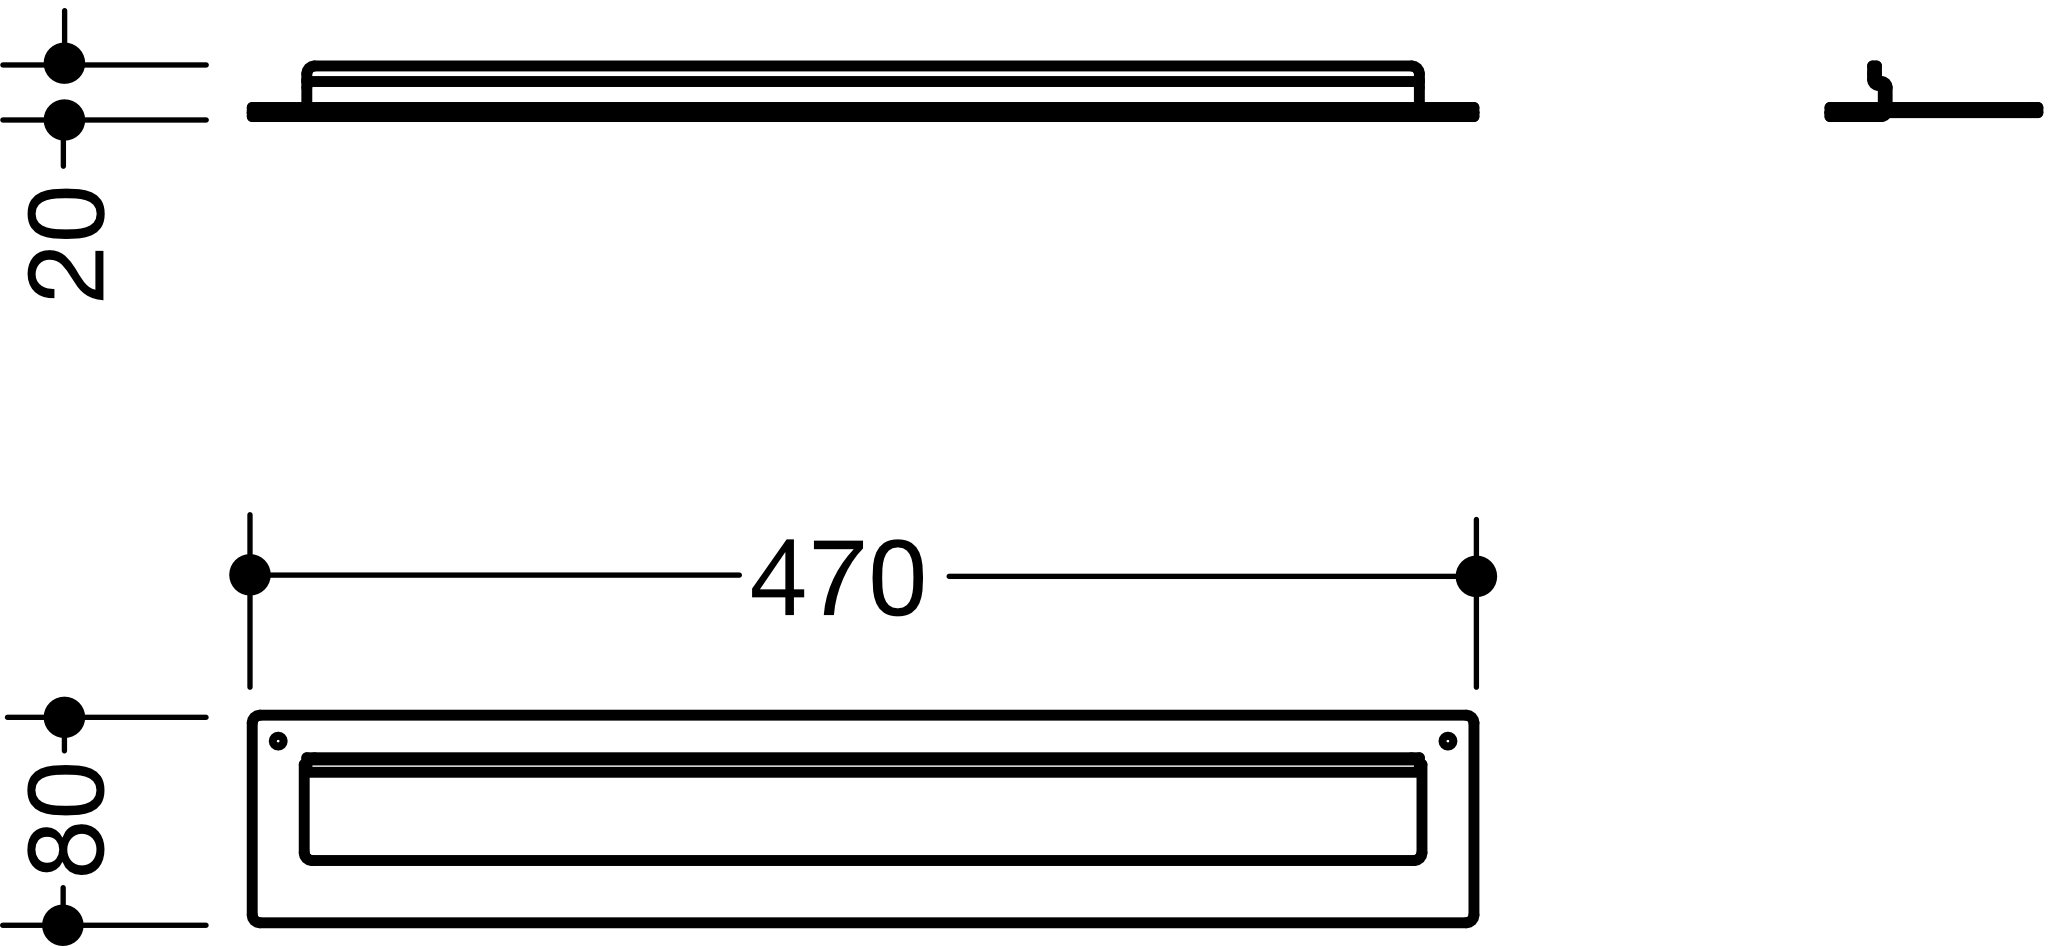 HEWI Handtuchhalter pulverbeschichtet 950.13.0026 SC 47 cm